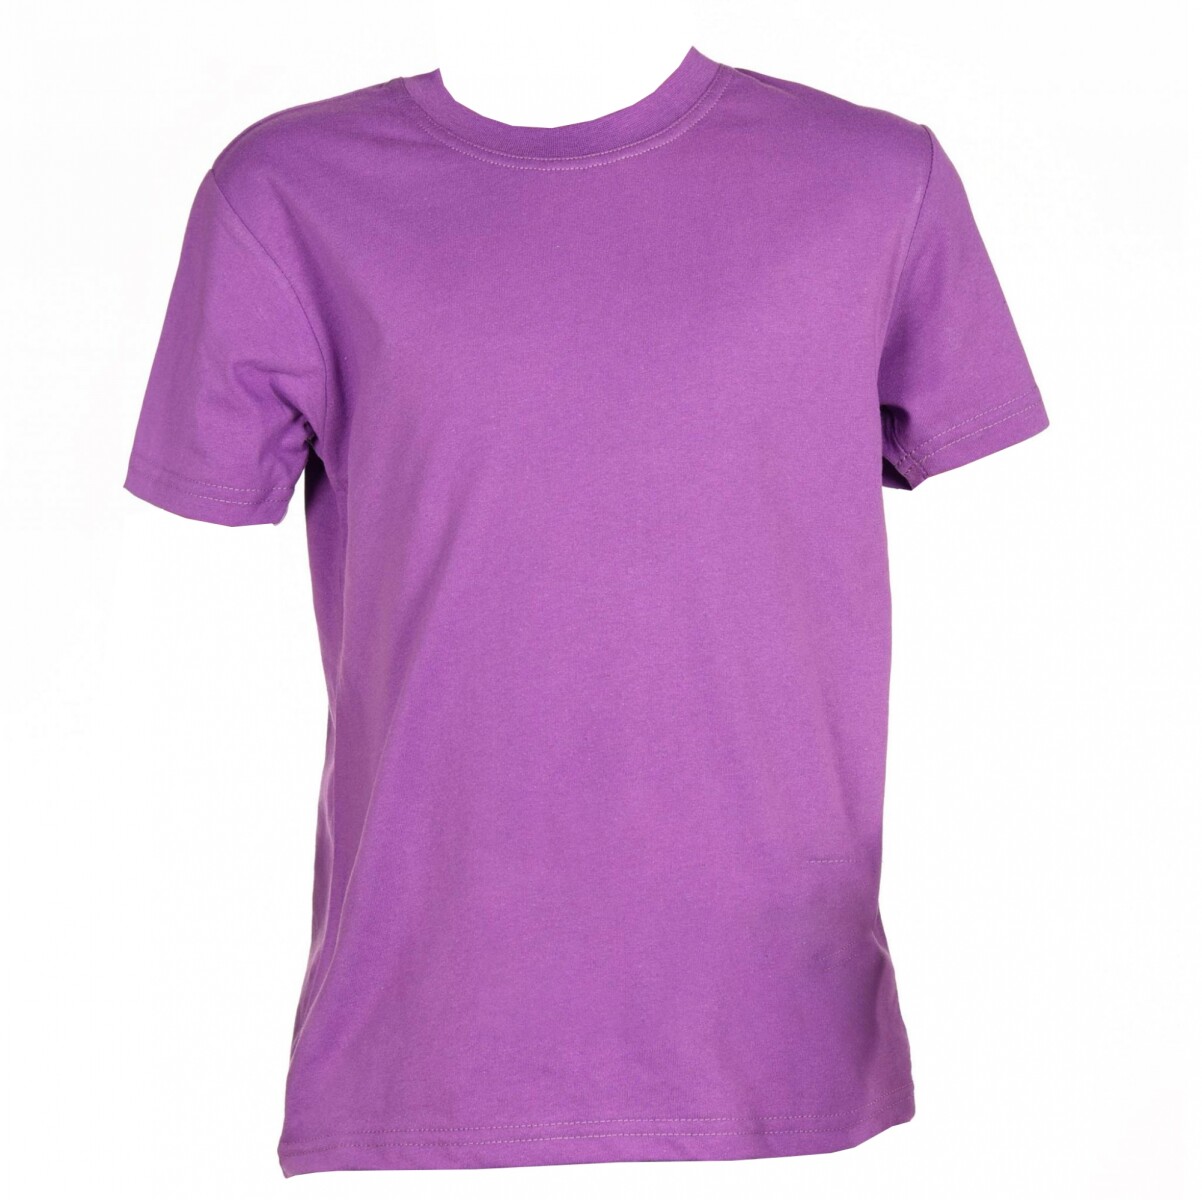 Camiseta Classic Niños - Violeta 